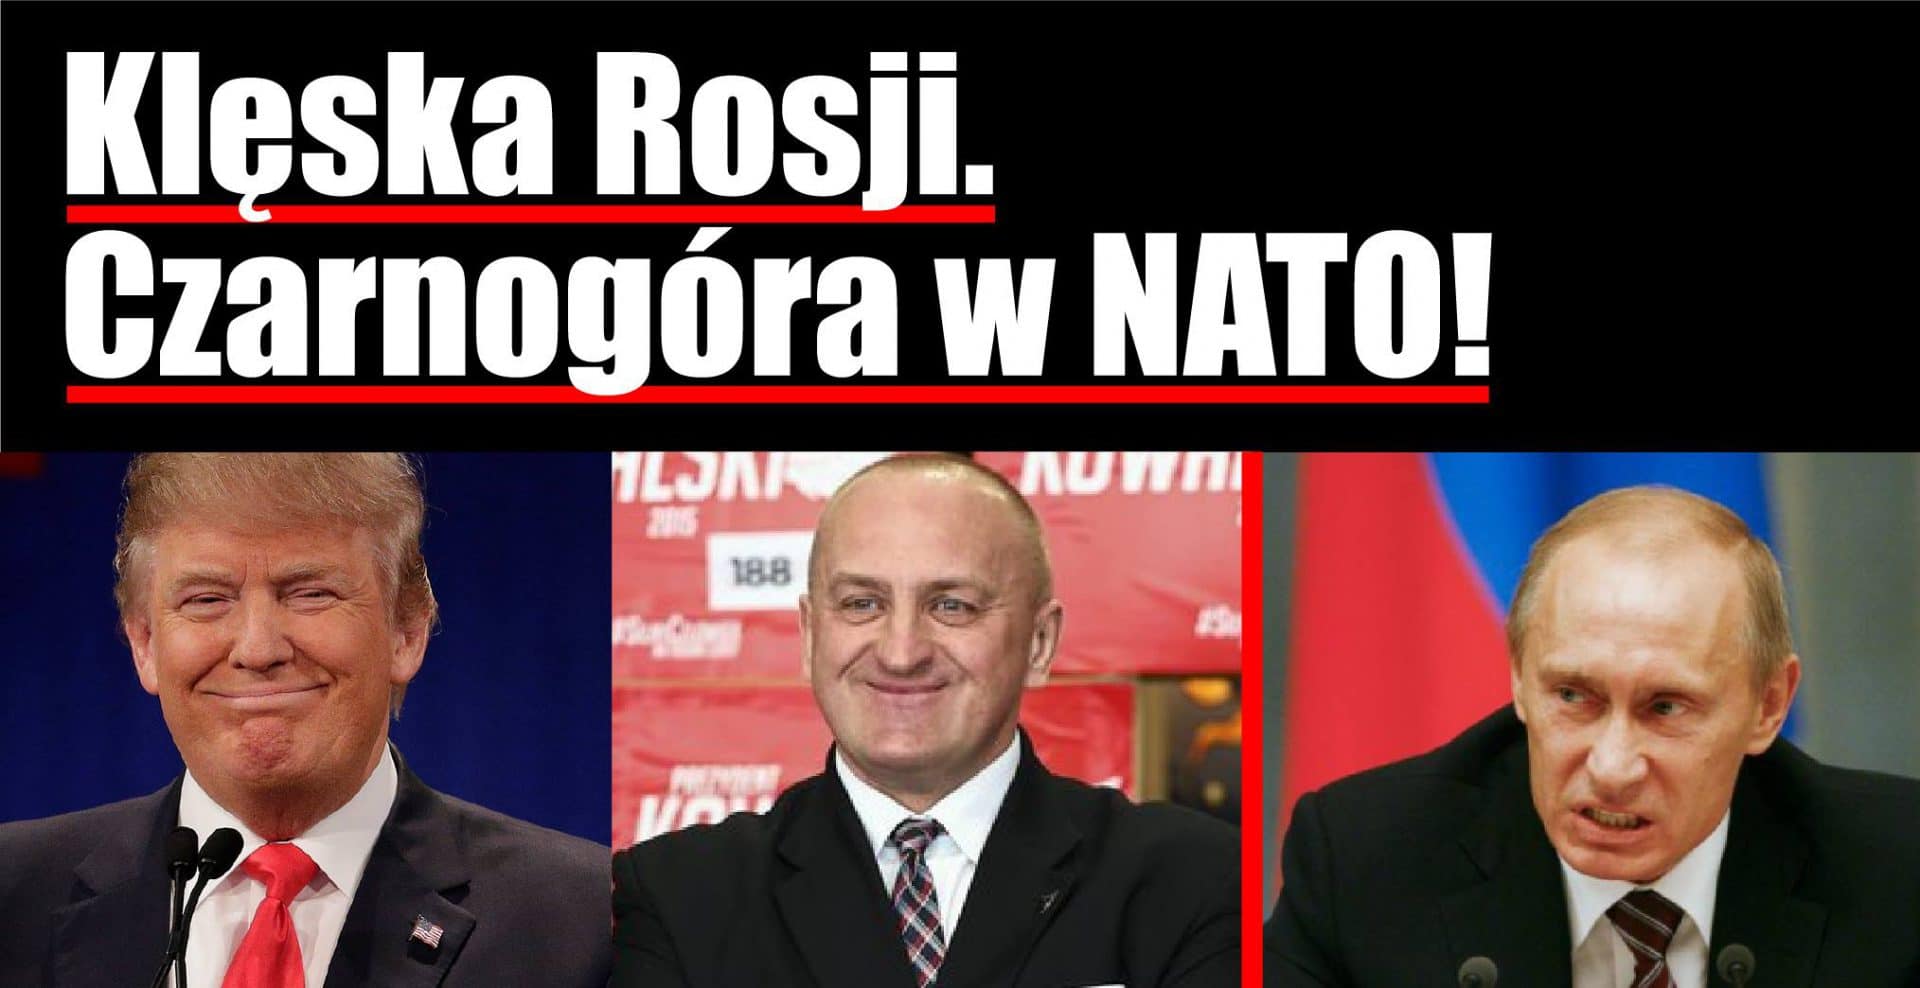 Klęska Rosji, Czarnogóra w NATO! Kowalski & Chojecki 30.03.2017